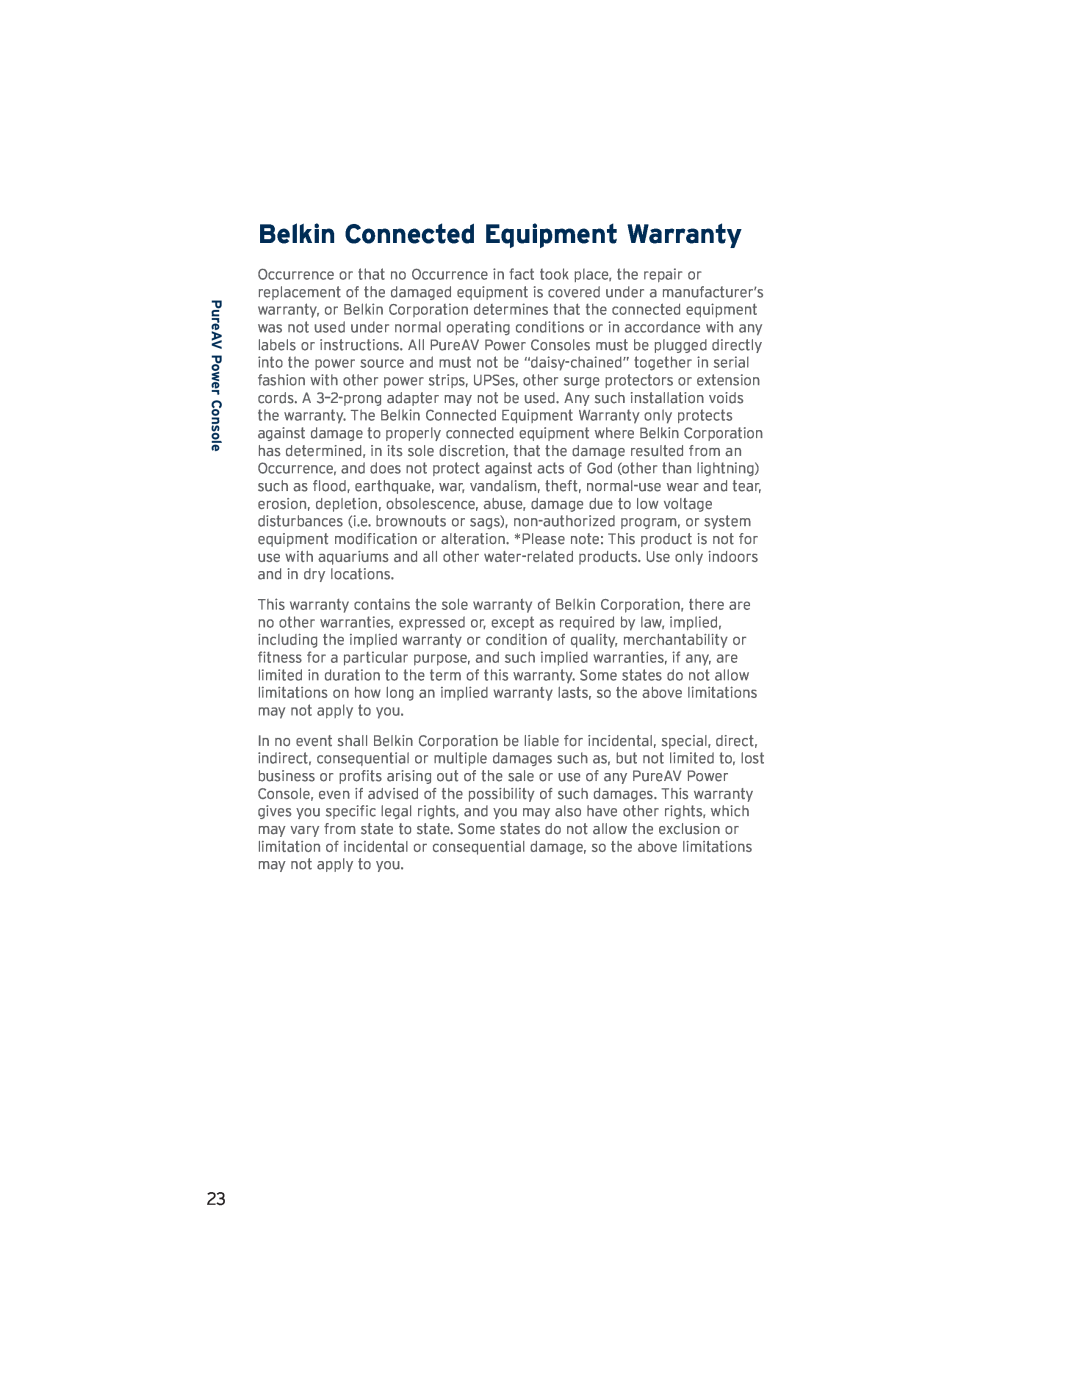 Belkin AP21300-12 user manual Belkin Connected Equipment Warranty, PureAV Power Console 